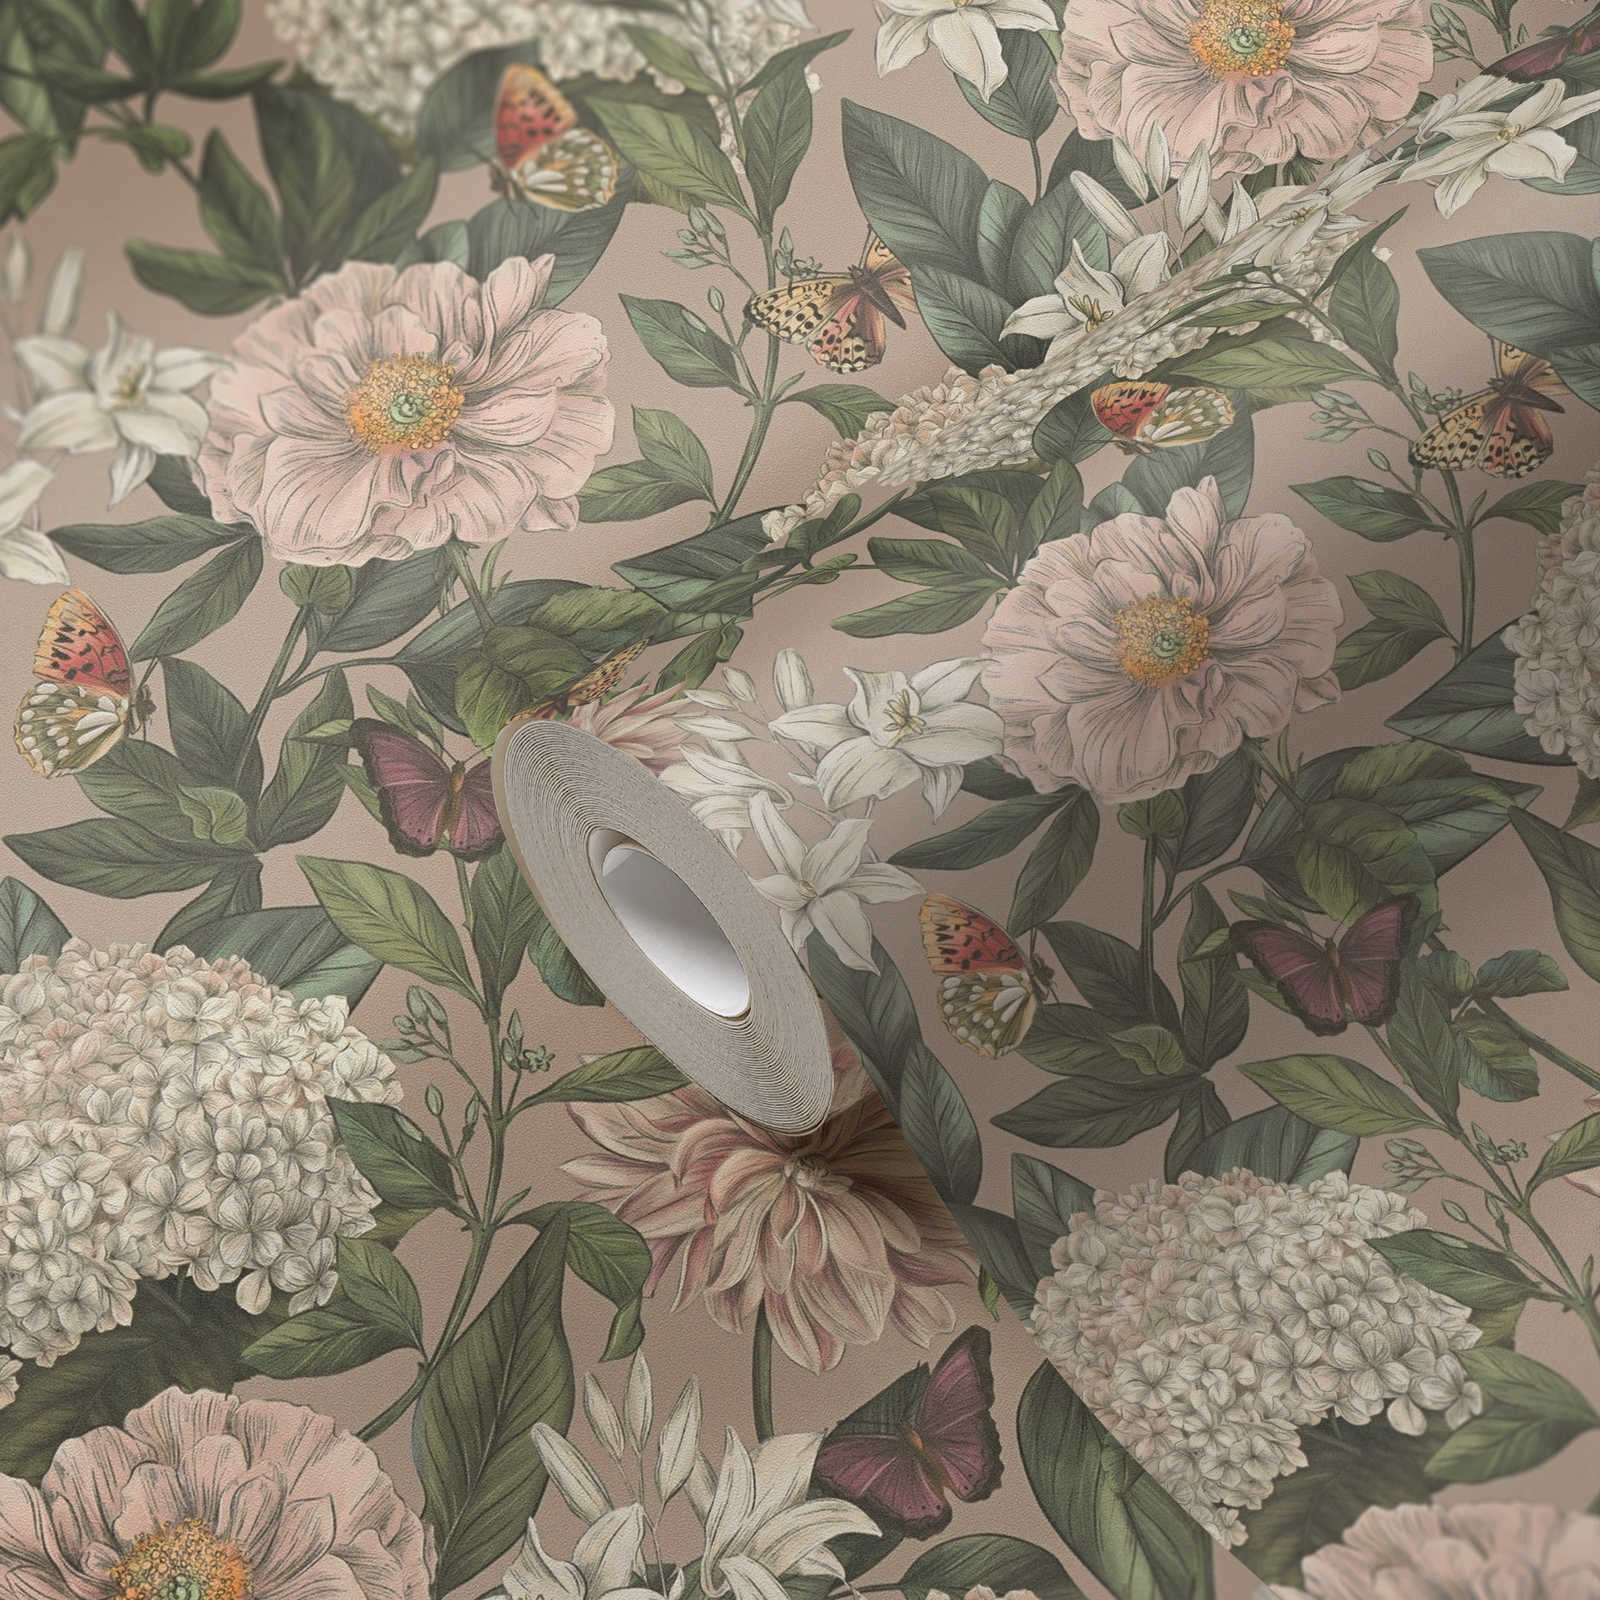             Papel pintado Floral moderno con animales y flores textura mate - rosa, verde, blanco
        